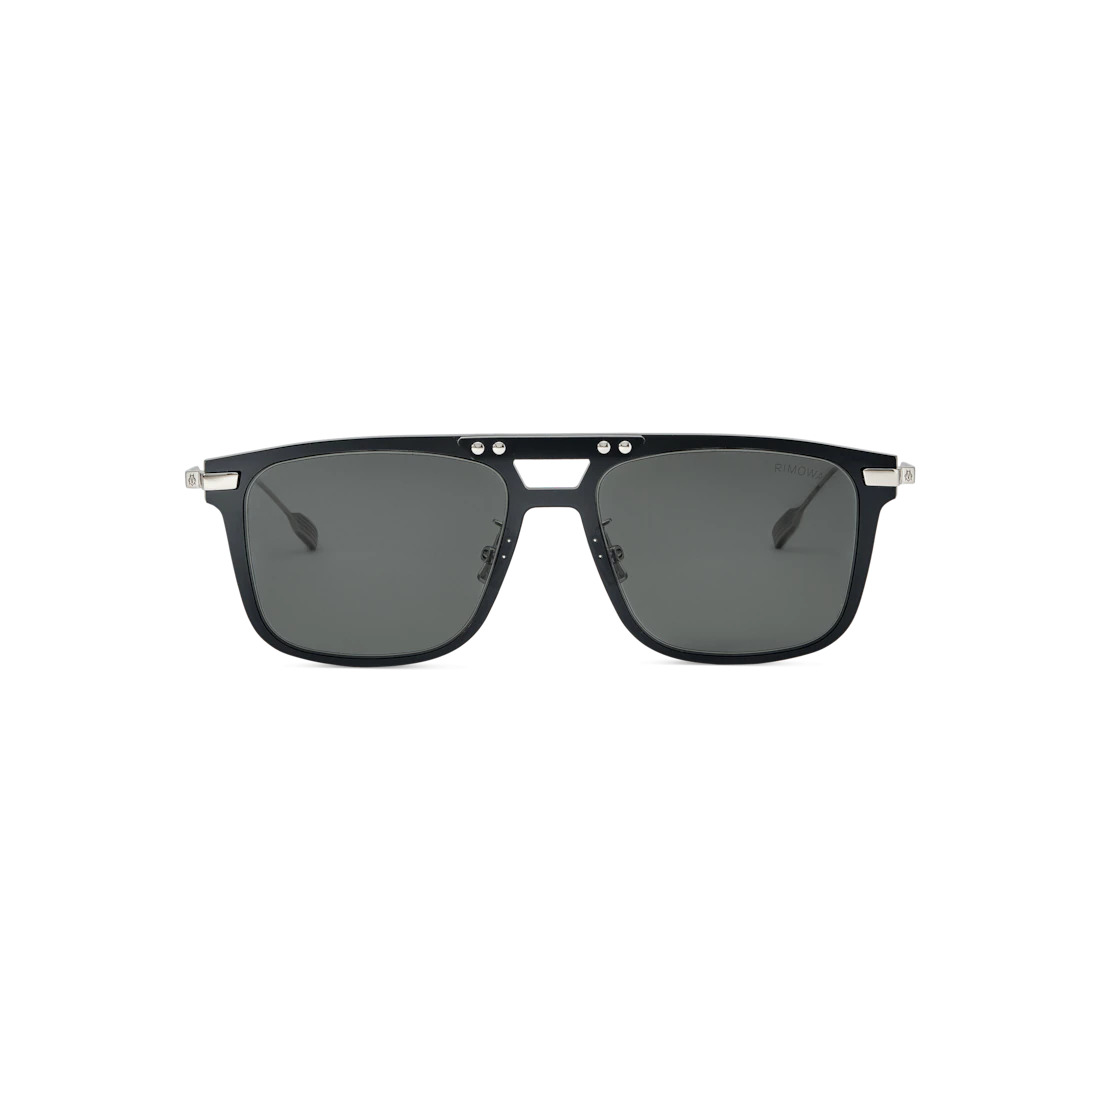 Eyewear Square Black Smoke Polarized Sunglasses - 1